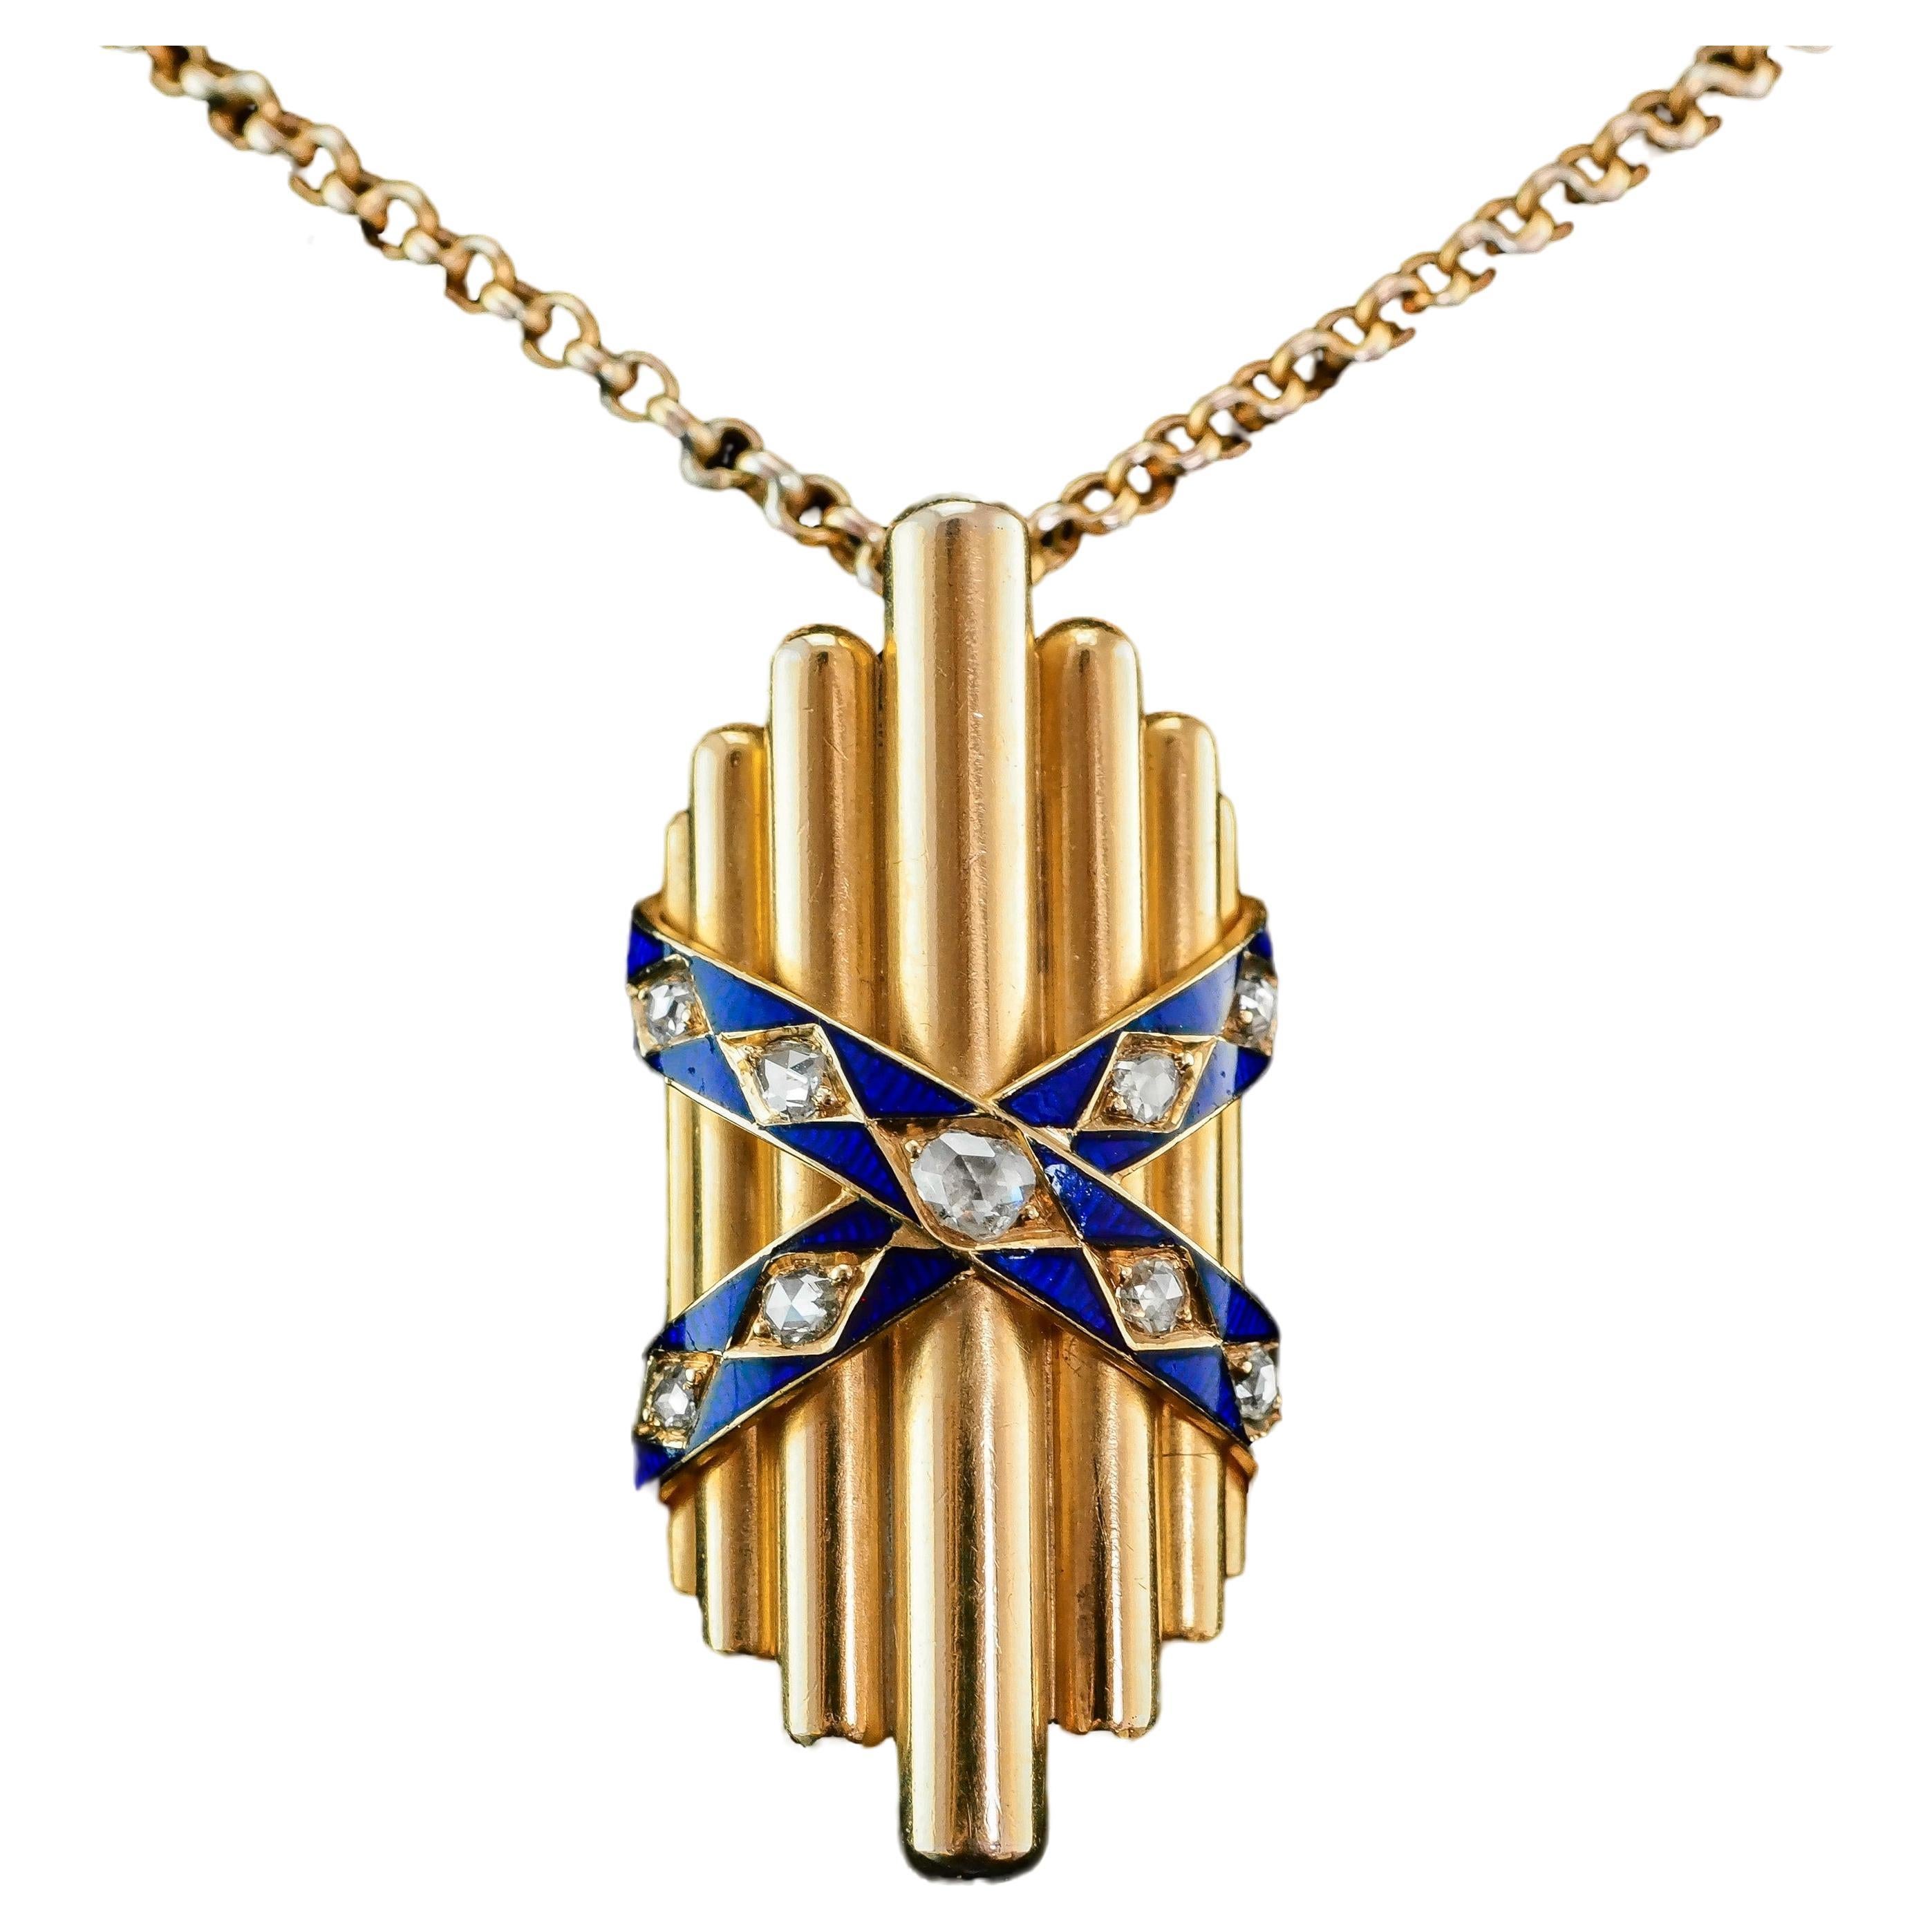 Antique 18K Gold Diamond Rose Cut Pendant Necklace with Blue Enamel - c.1880 For Sale